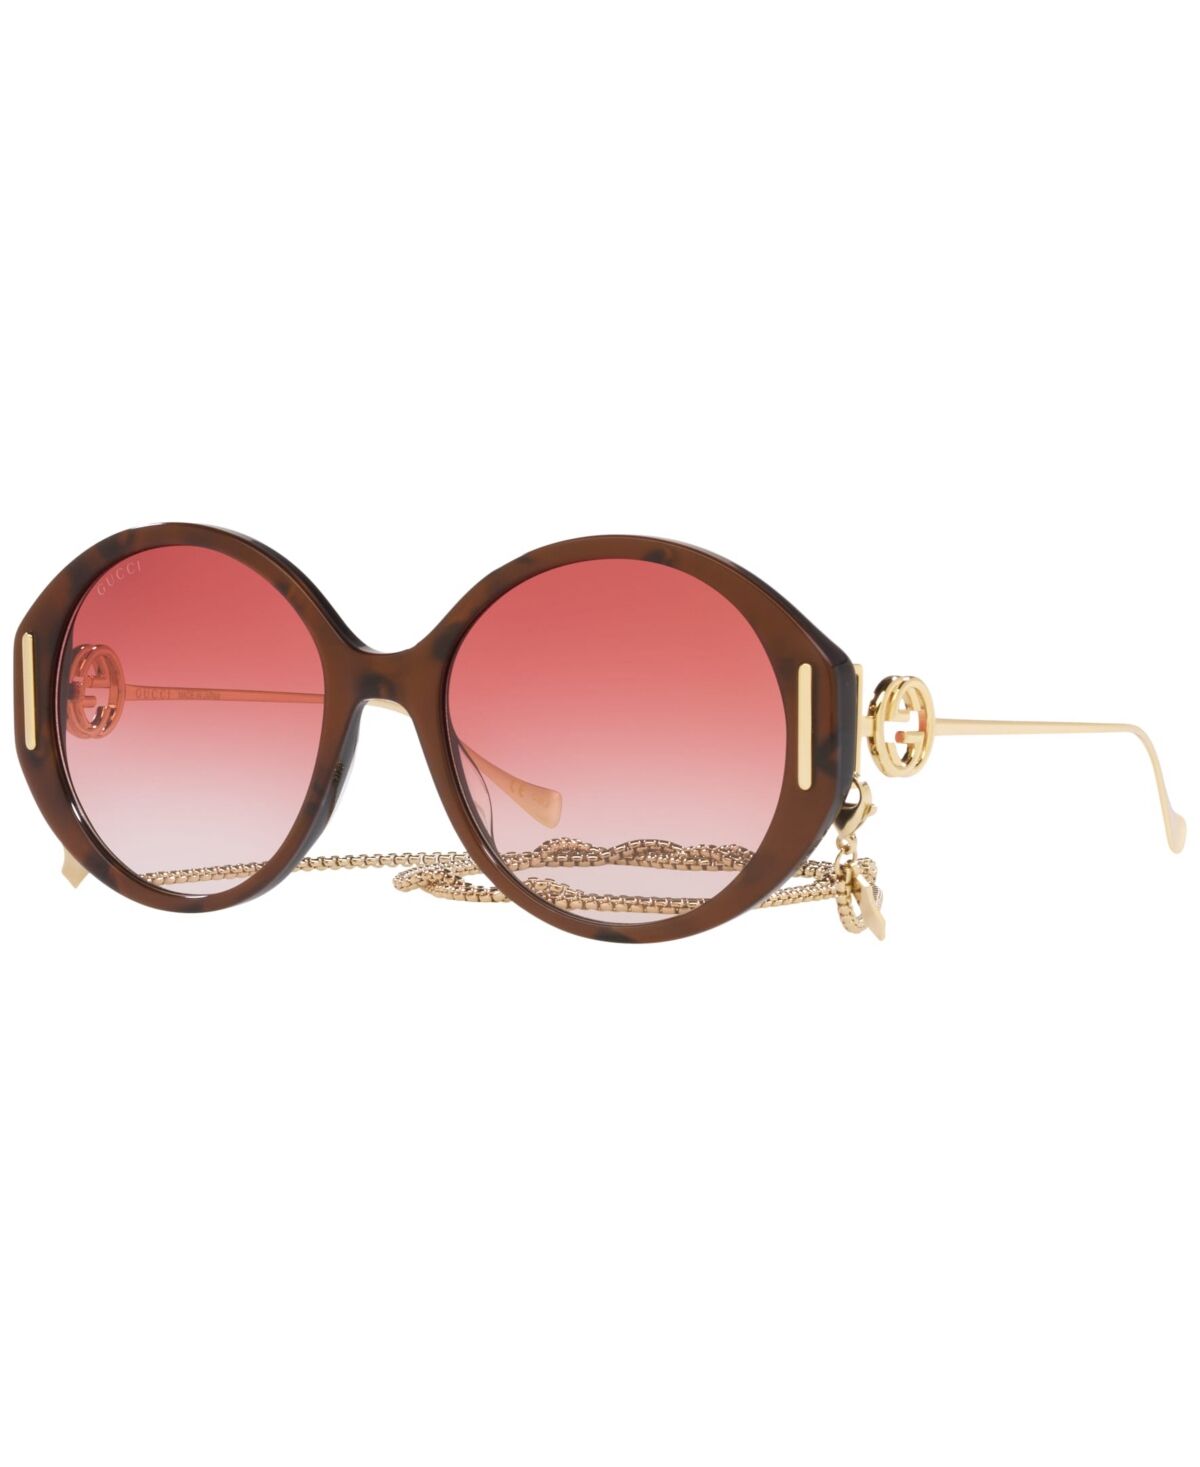 Gucci Women's Sunglasses, GG1202S - Brown